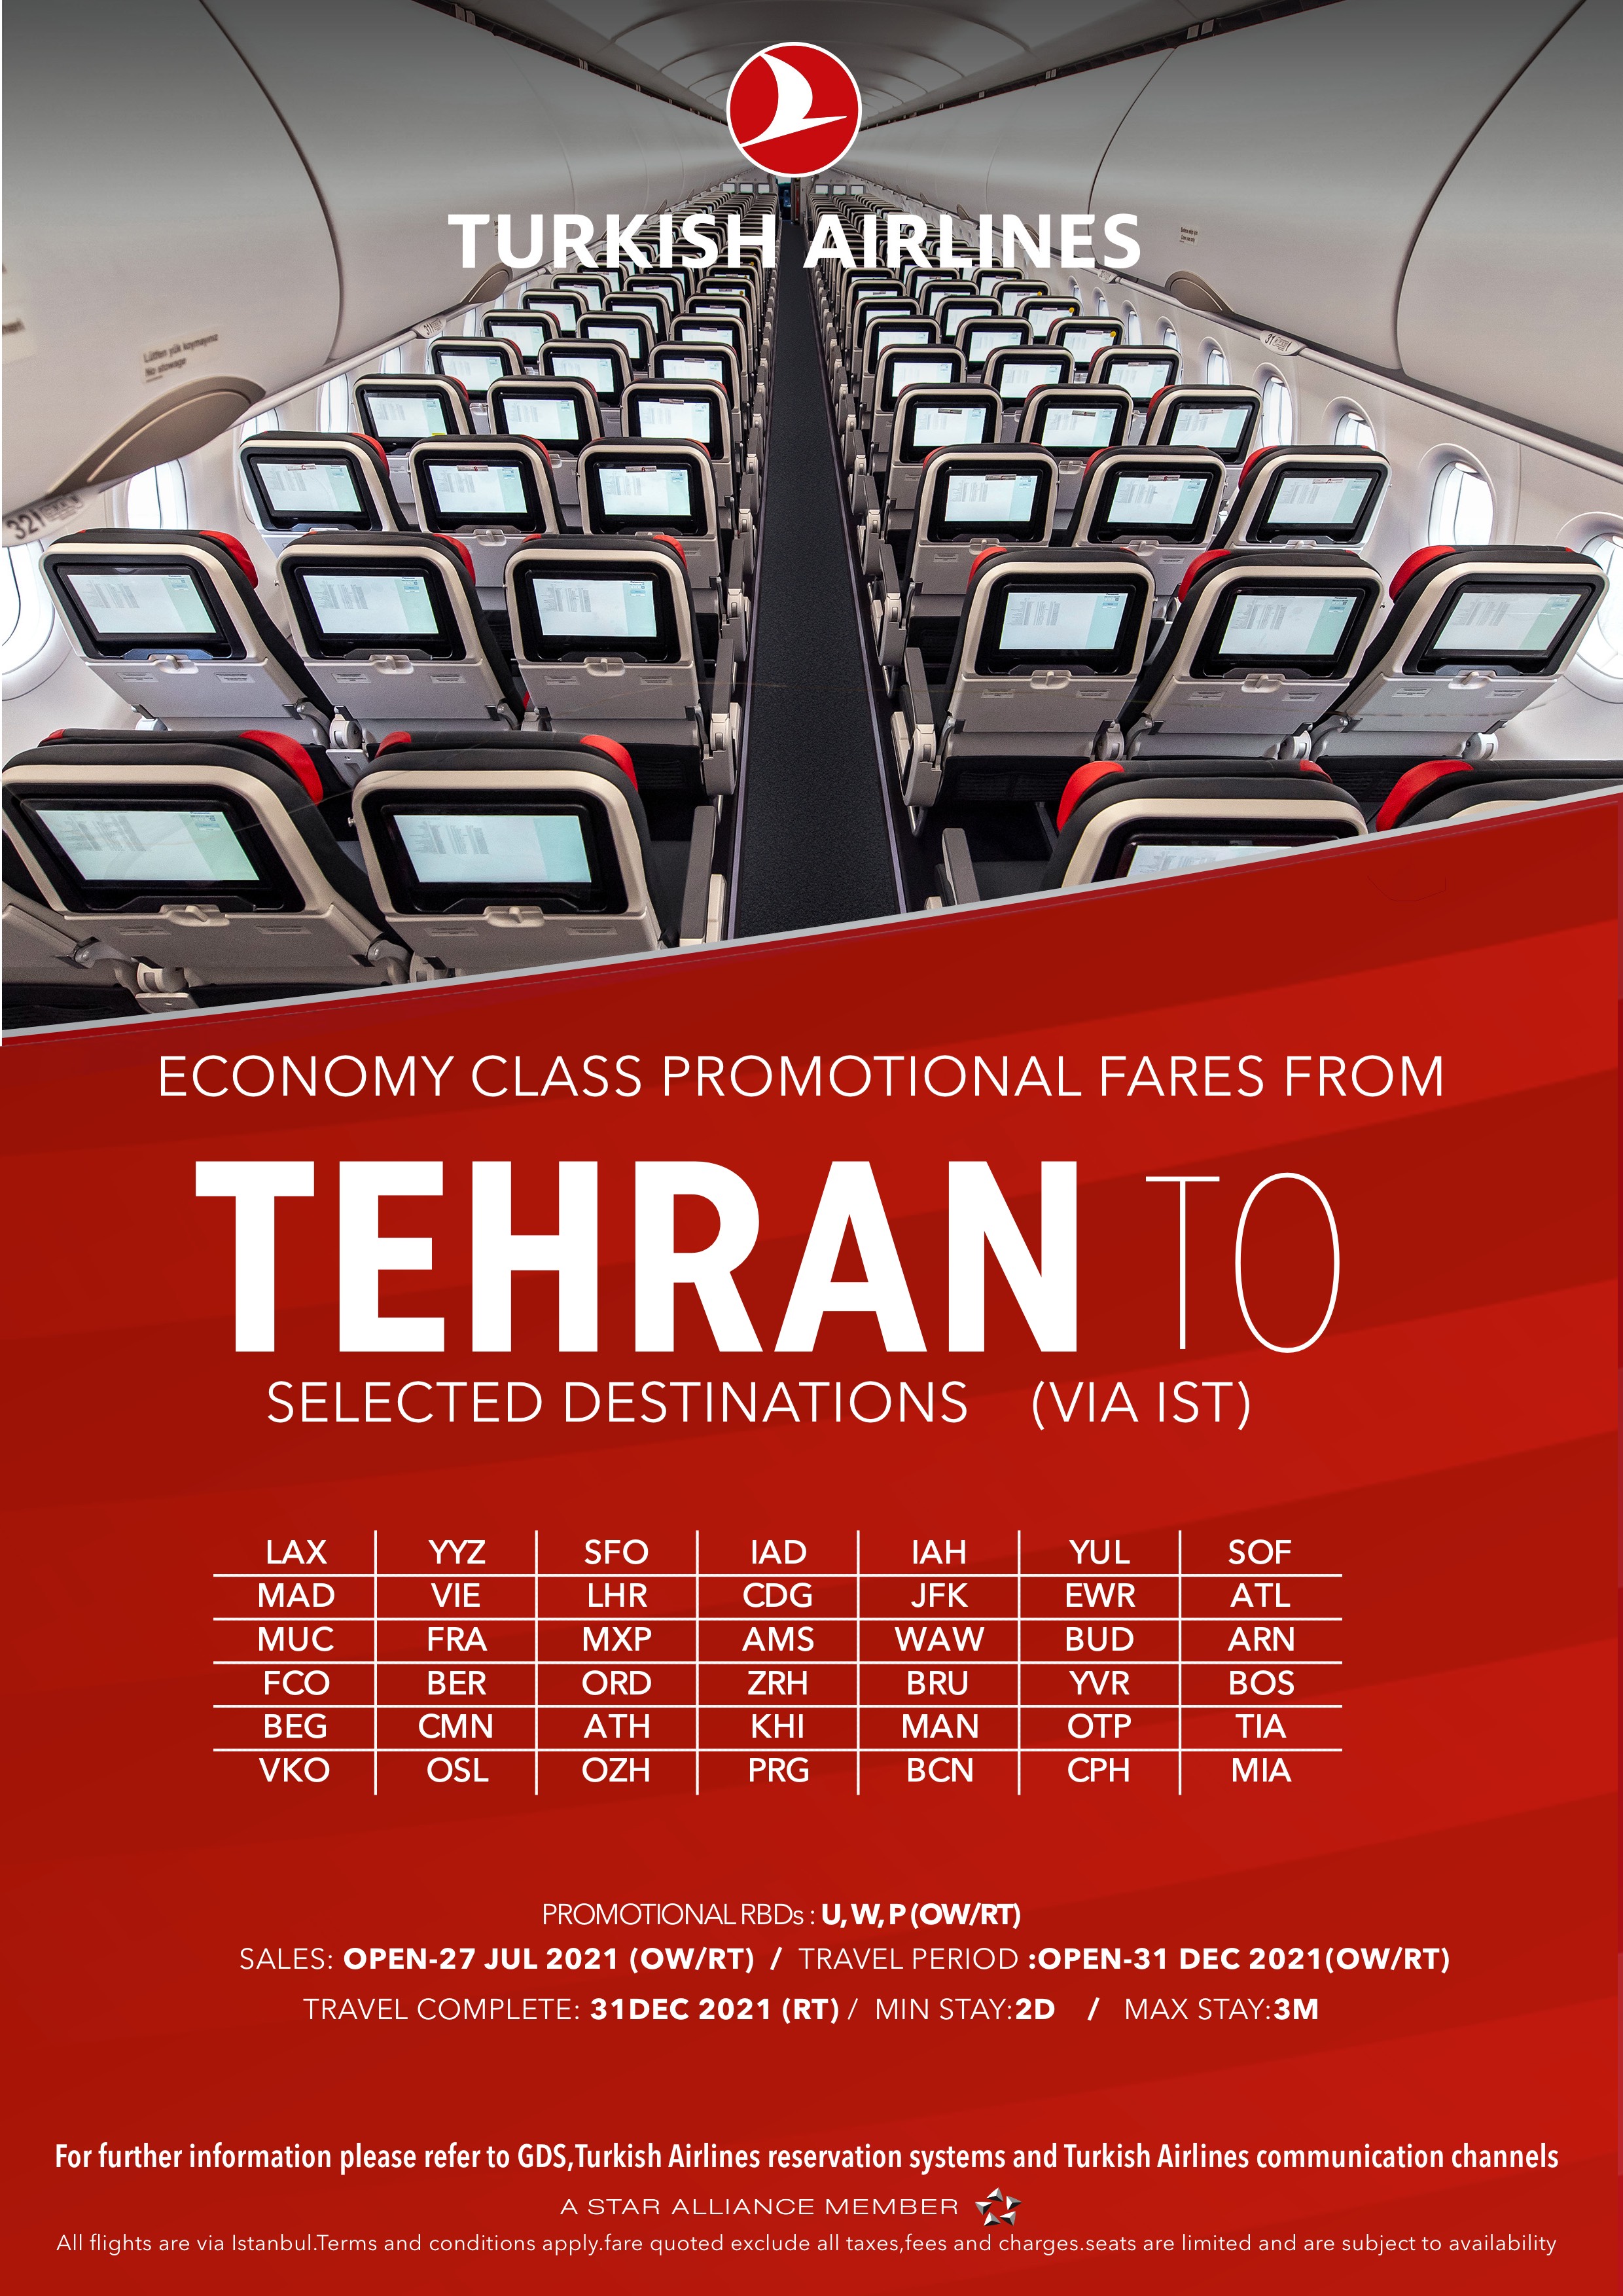 بخشنامه و اطلاعیه   هواپیمایی ترکیش درباره نرخهای ویژه در کلاس اکونومی از تهران تا تاریخ 27جولای 2021